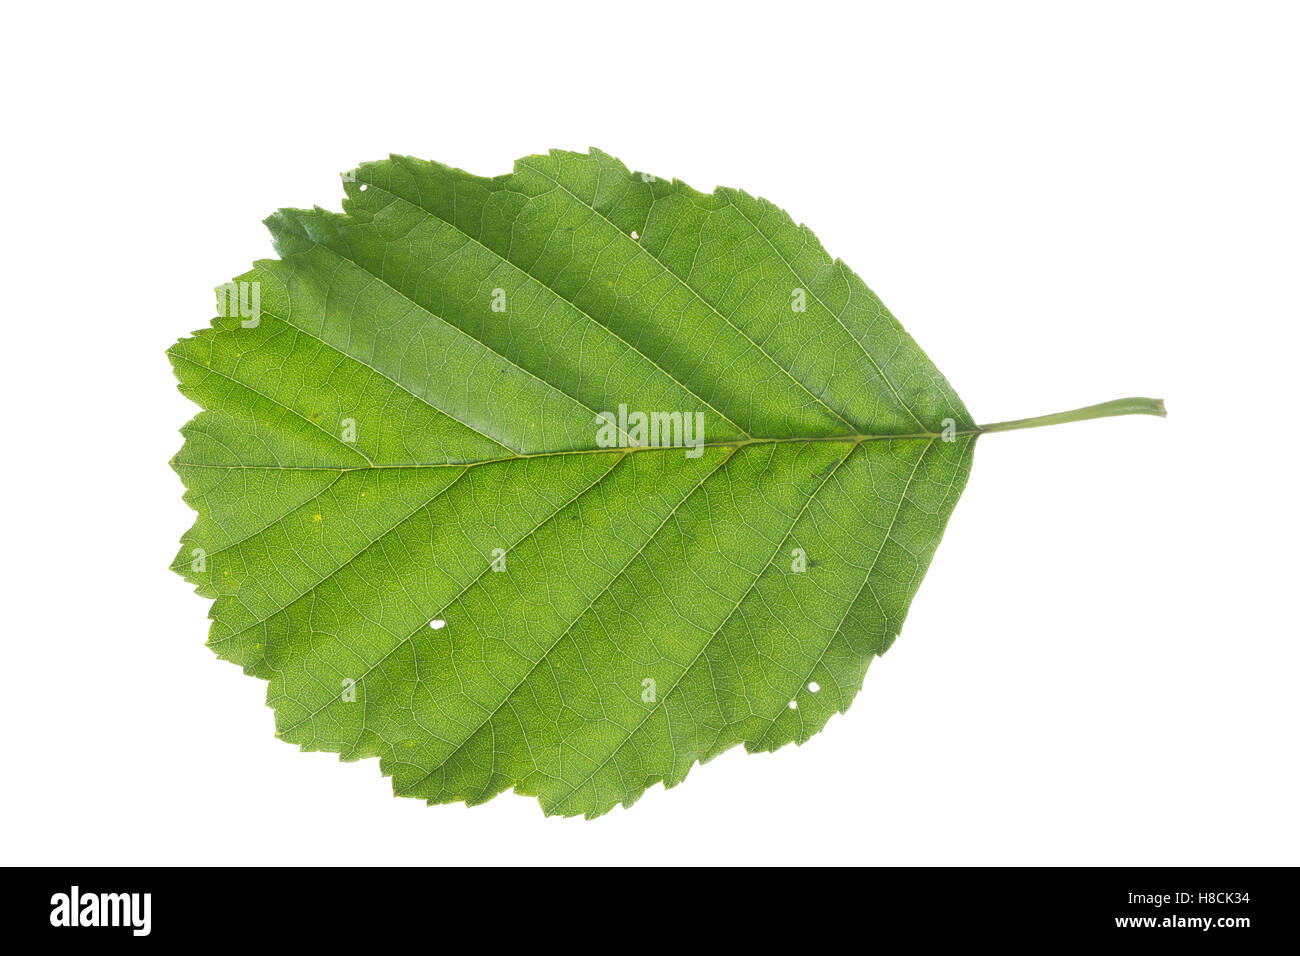 Schwarz-Erle, Schwarzerle, Erle, Alnus glutinosa, Common Alder, Aulne glutineux. Blatt, Blätter, leaf, leaves Stock Photo